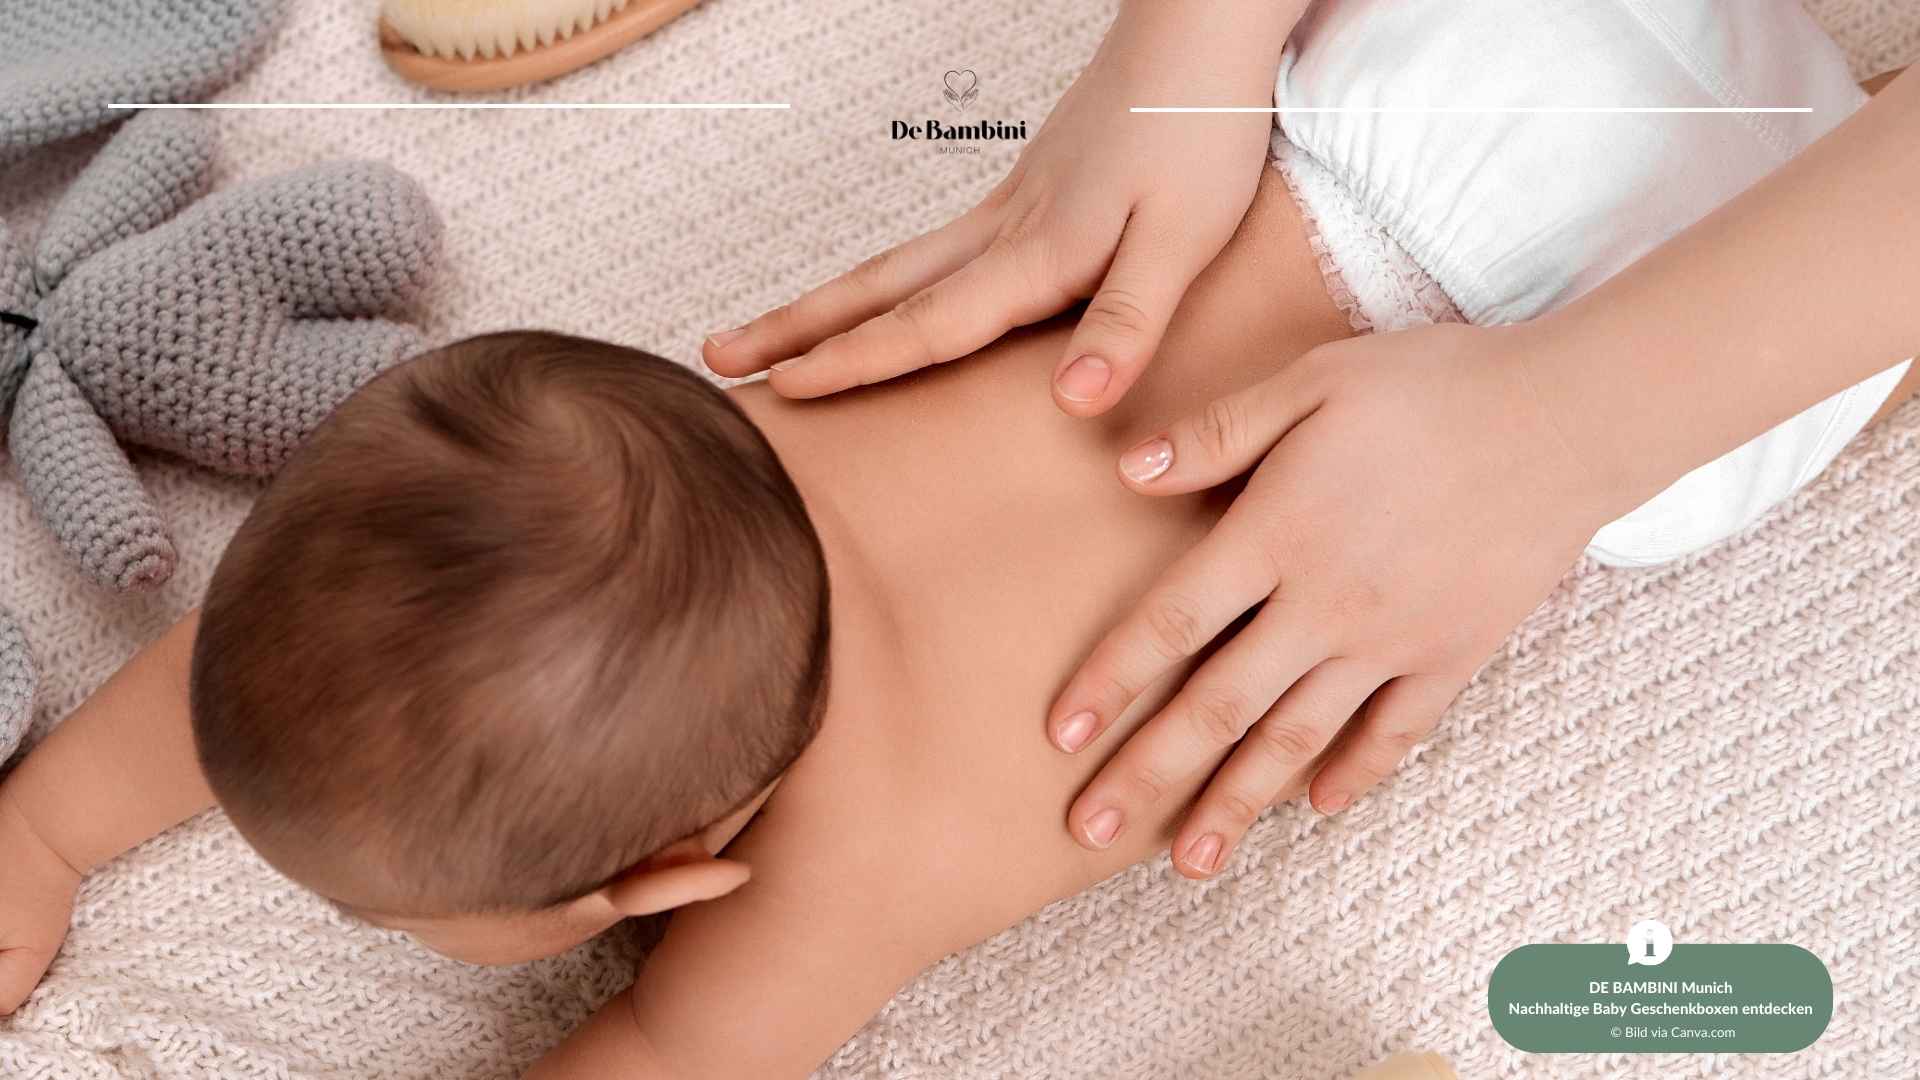 Sanfte Berührung, starke Bindung - DE BAMBINI Munich präsentiert Babymassage-Kurse